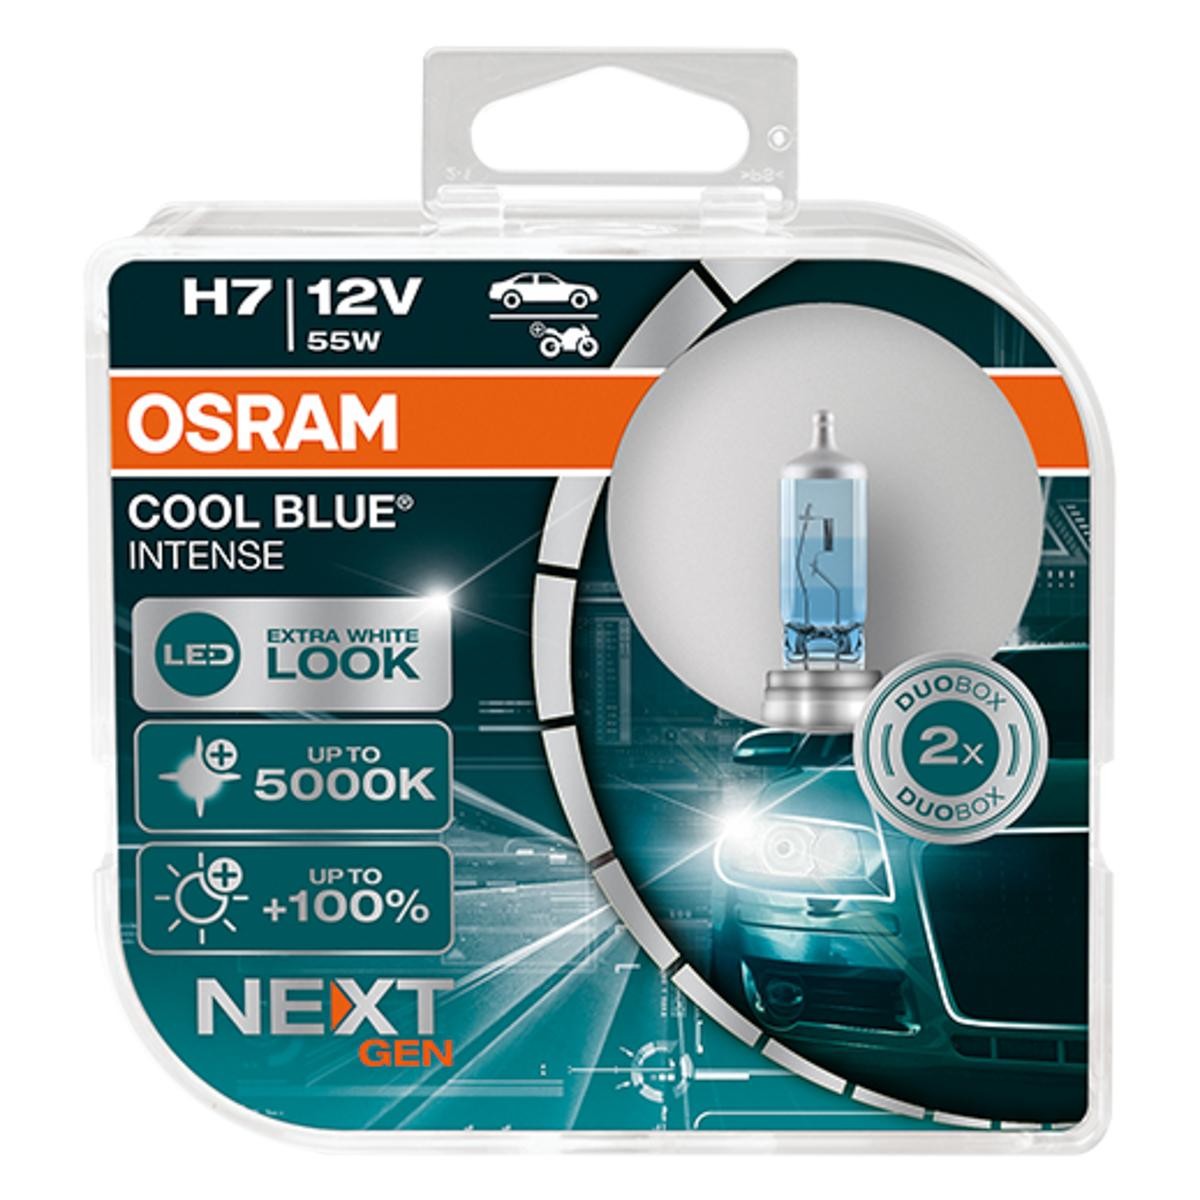 64210CBN-HCB OSRAM Headlight bulbs CHRYSLER H7 12V 55W PX26d, 5000K, Halogen